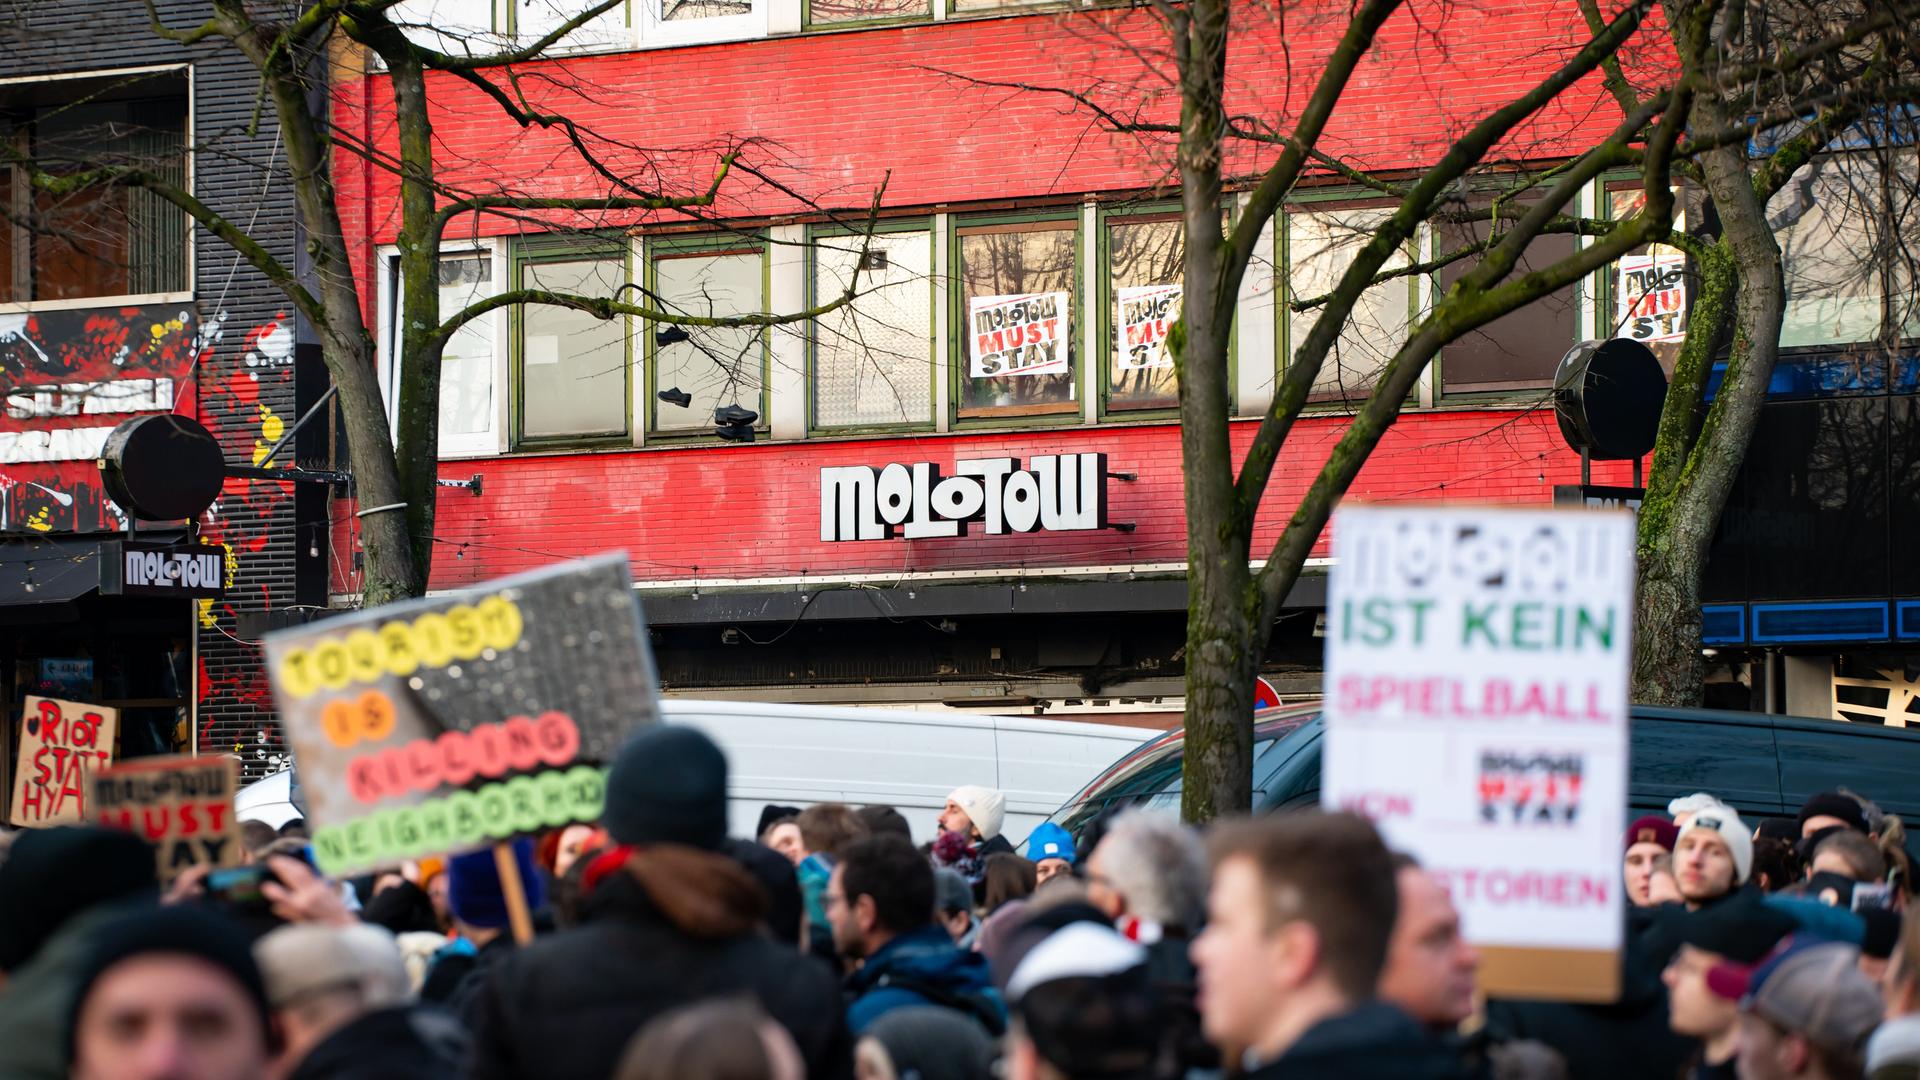 Zahlreiche Demonstranten stehen mit Plakaten auf der Reeperbahn vor dem Musikclub Molotow. Weil anstelle des Hamburger Musikclubs Molotow an der Reeperbahn ein Hotel entstehen soll, muss sich der Betreiber eine neue Bleibe suchen und sieht deshalb seine Existenz bedroht.